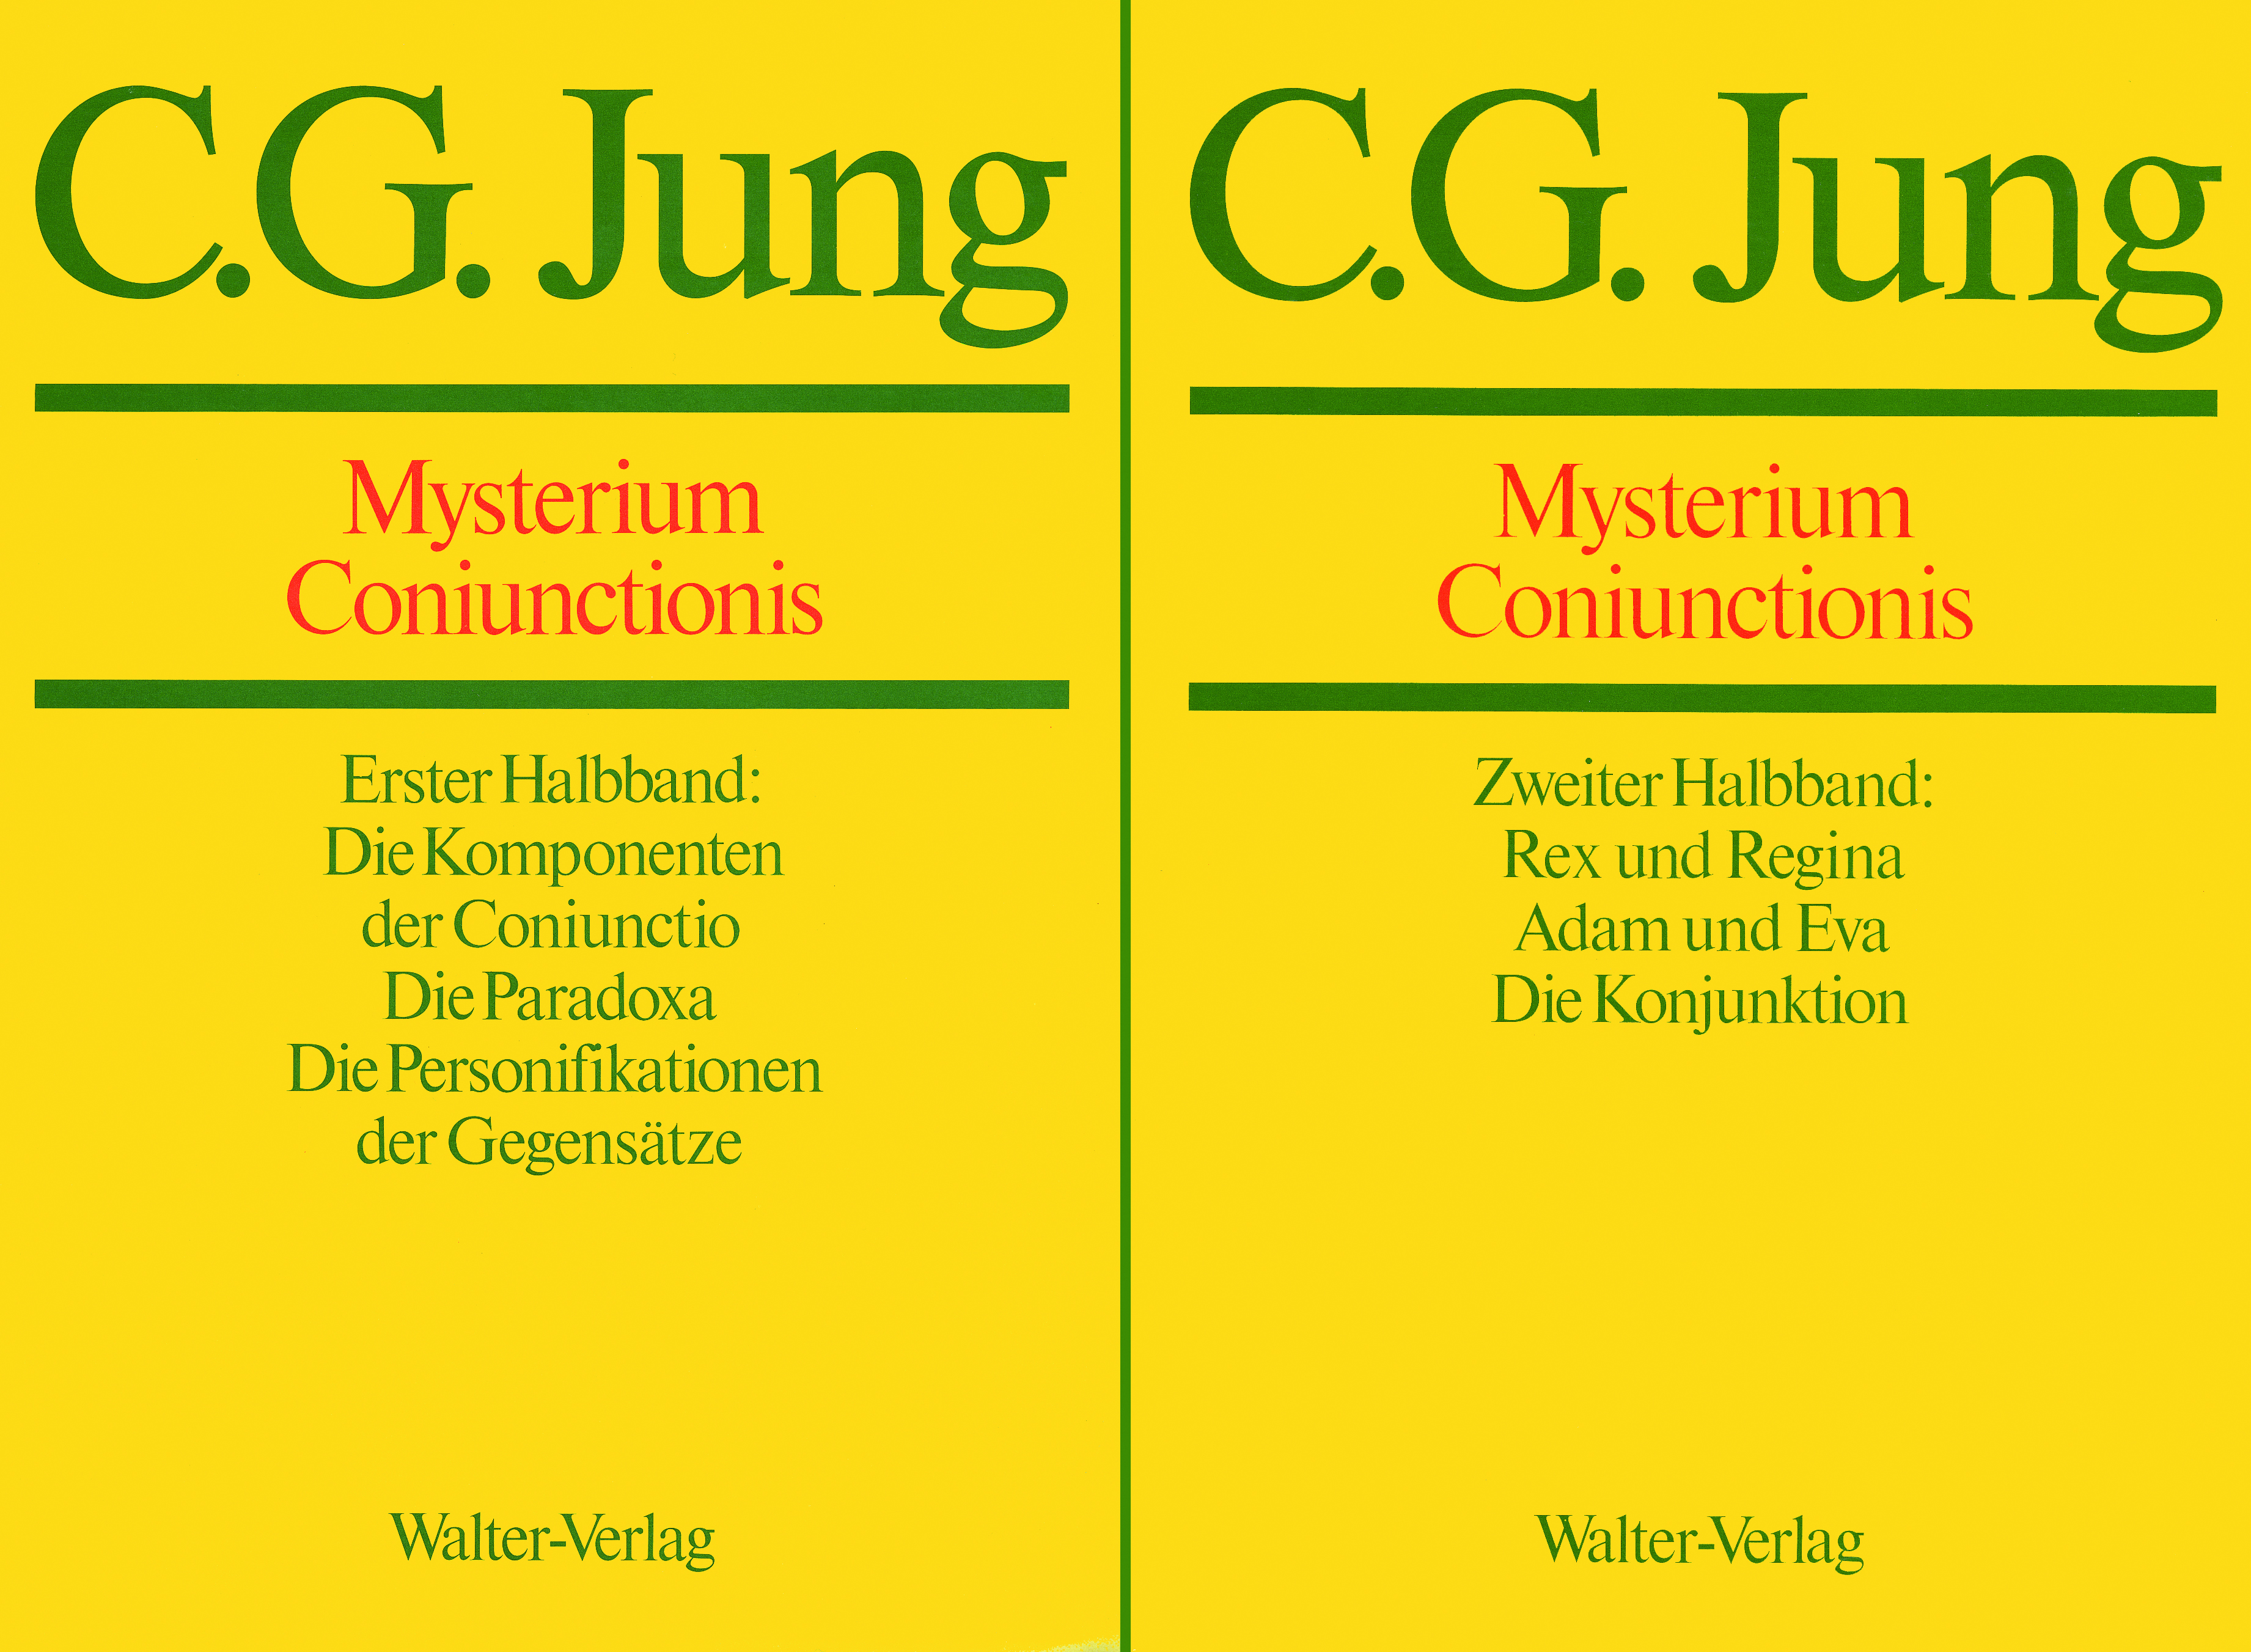 C.G.Jung - Mysterium Coniunctionis